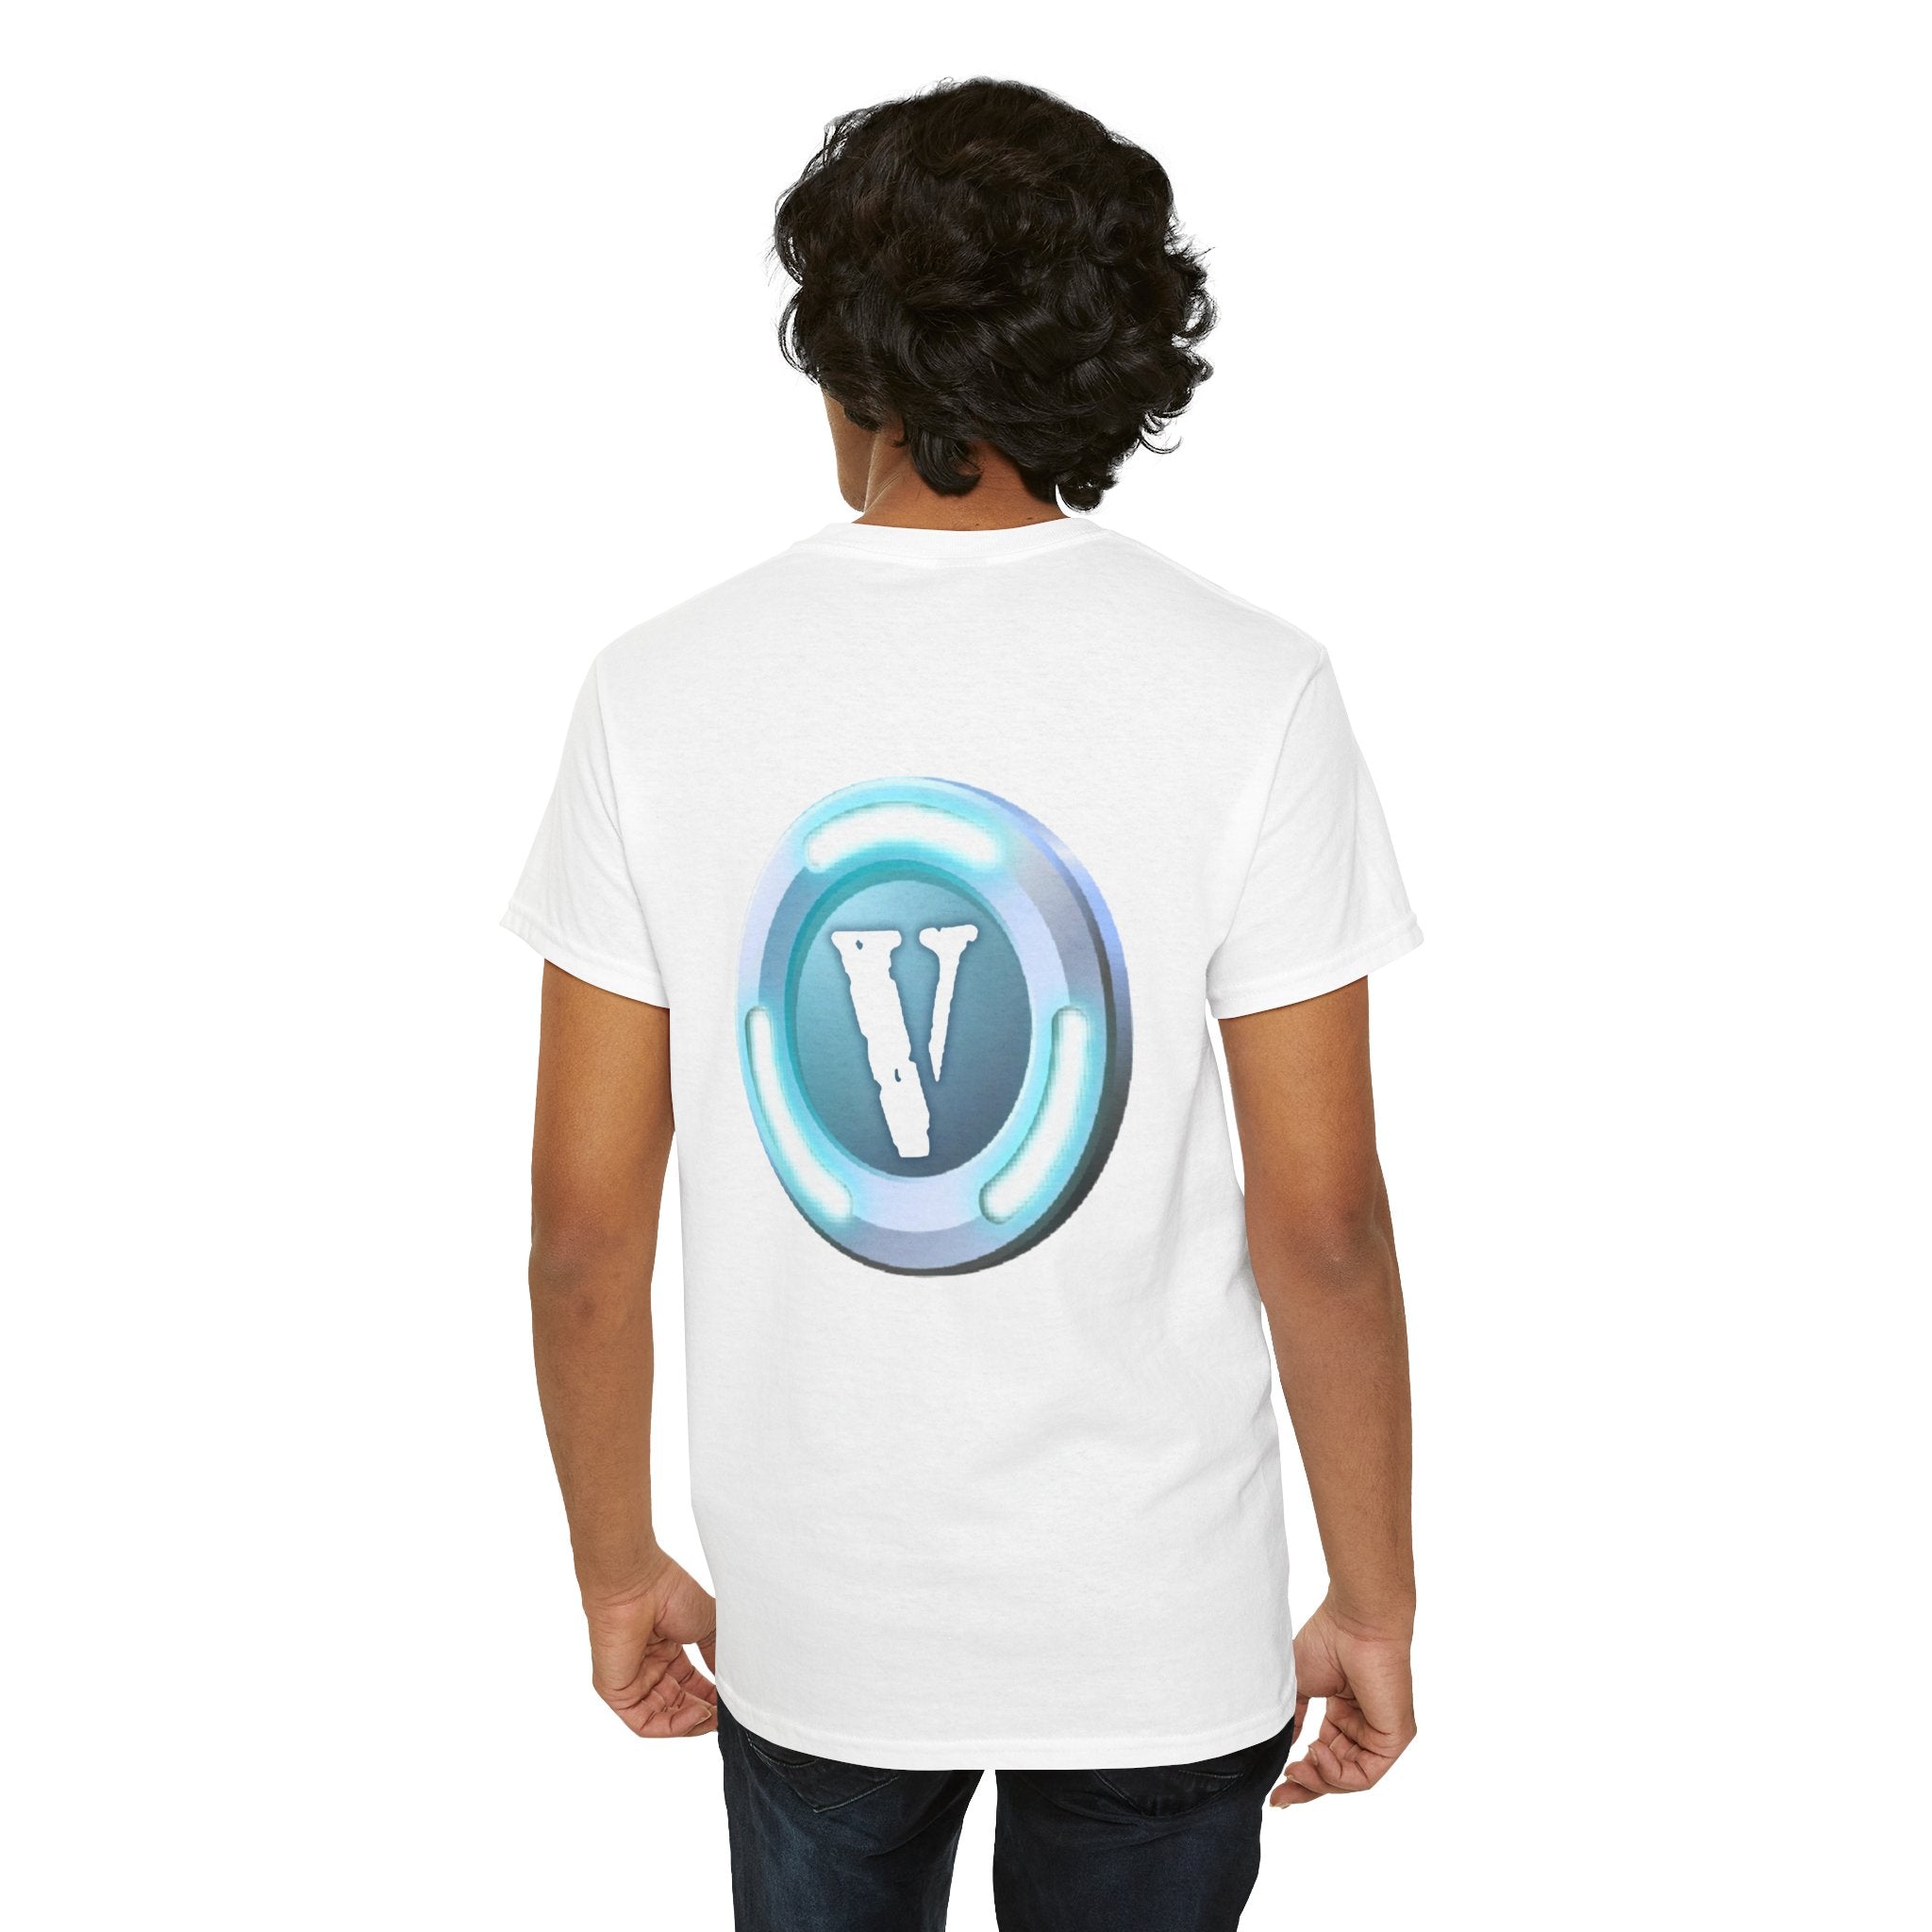 VLONE V-BUCKS Fortnite Shirt (Front and Back)